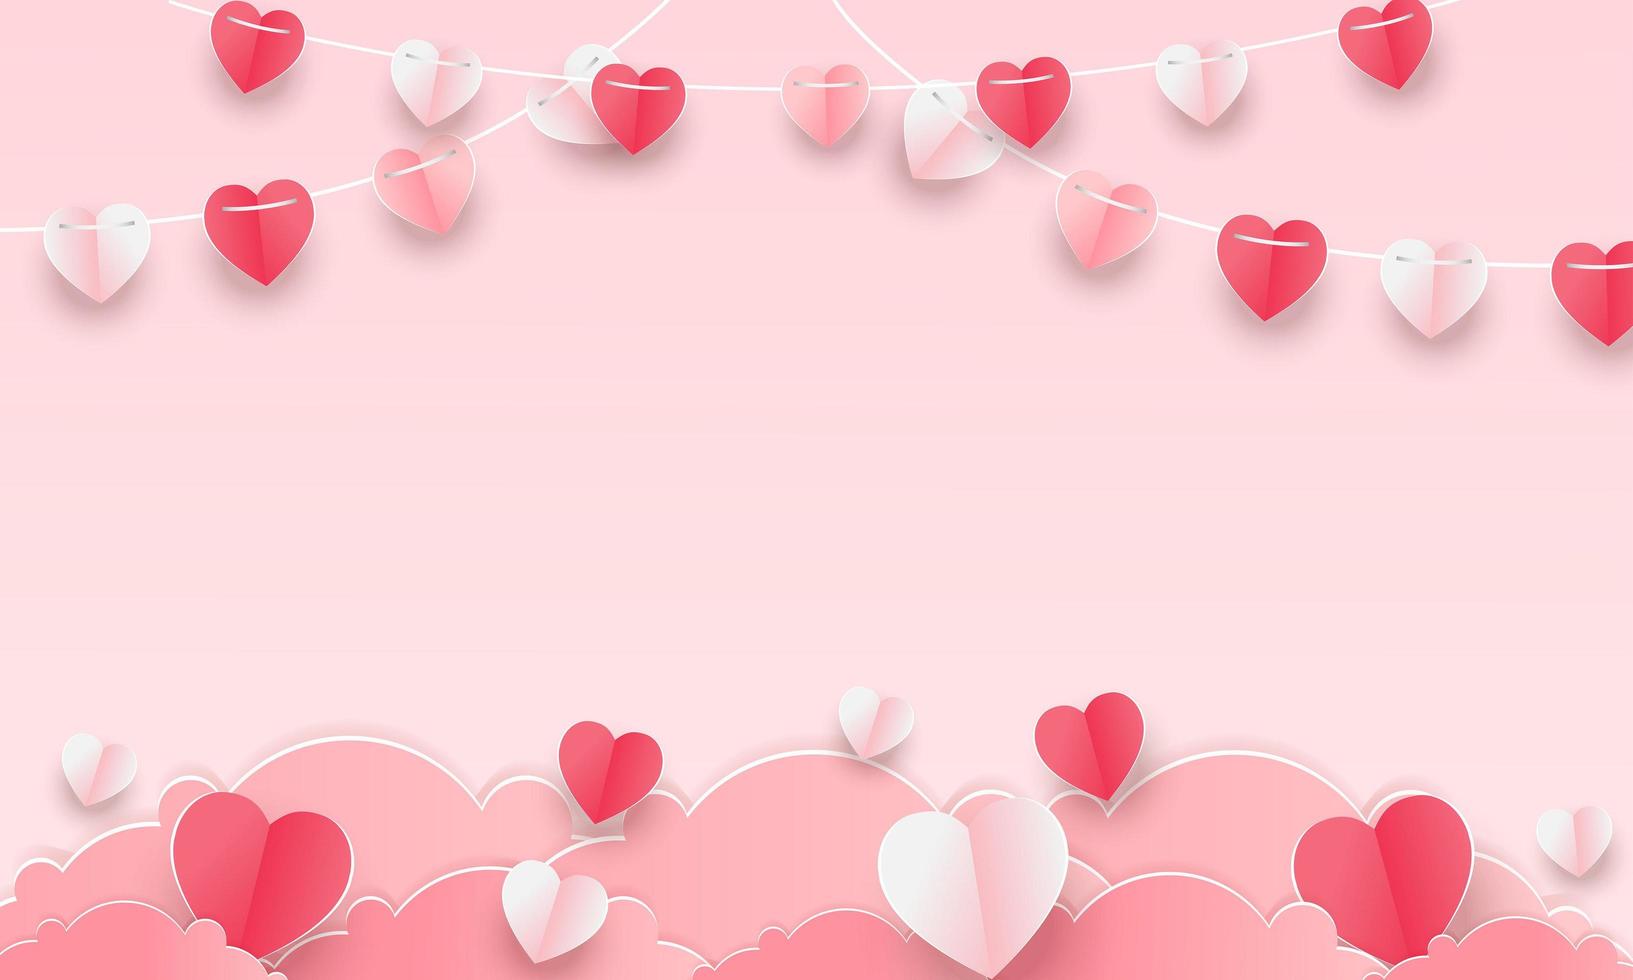 fundo de conceito de dia dos namorados. ilustração vetorial. corações de papel 3D vermelho e rosa com moldura quadrada branca. banner de venda de amor fofo ou cartão de felicitações vetor